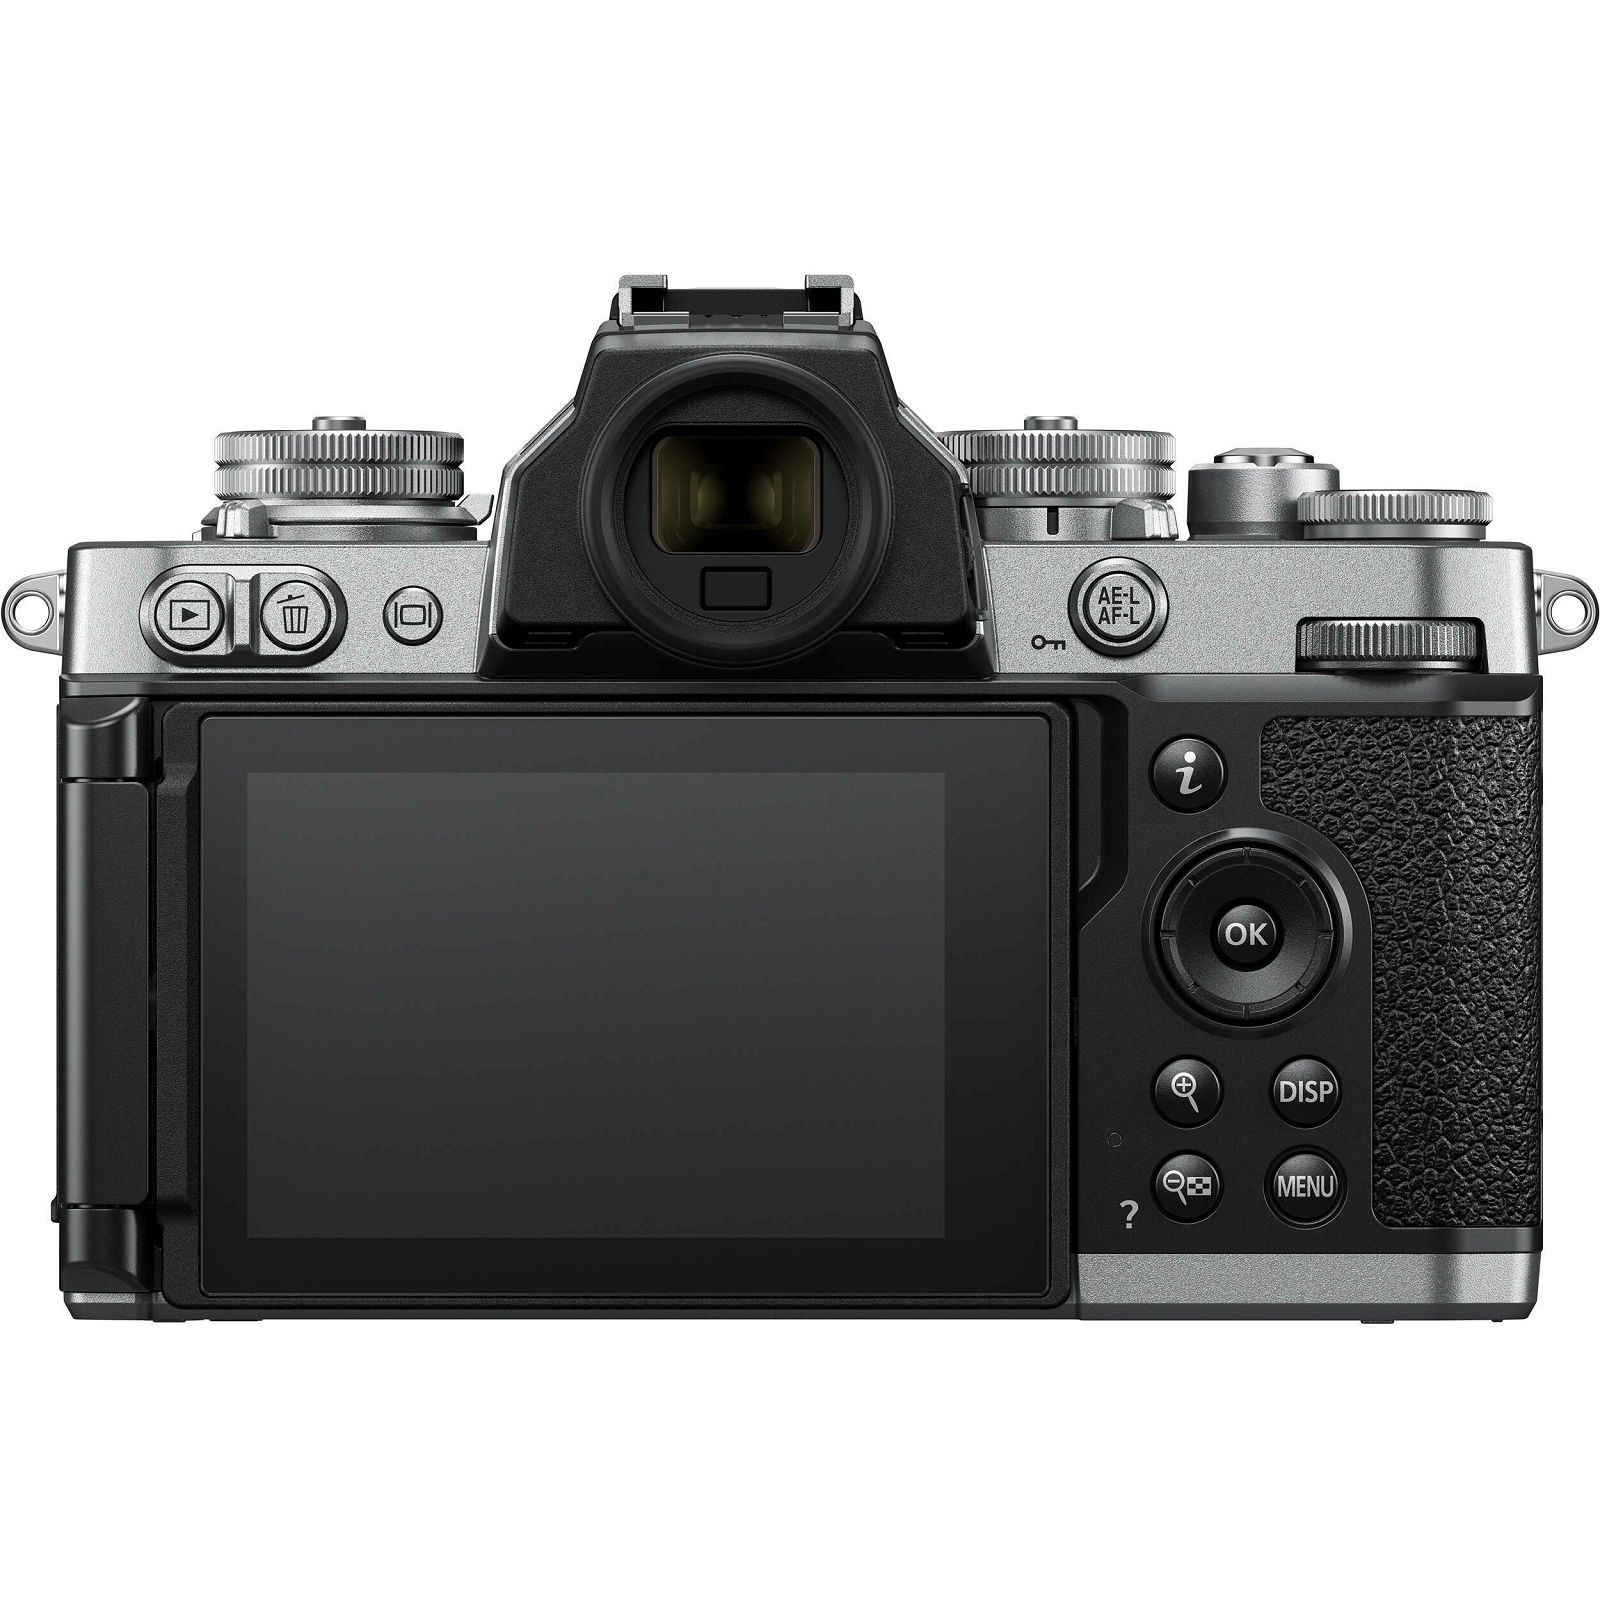 Nikon Z fc + 16-50 f/3.5-6.3 VR (SL) + 50-250 f/4.5-6.3 VR Double zoom lens kit (VOA090K003)